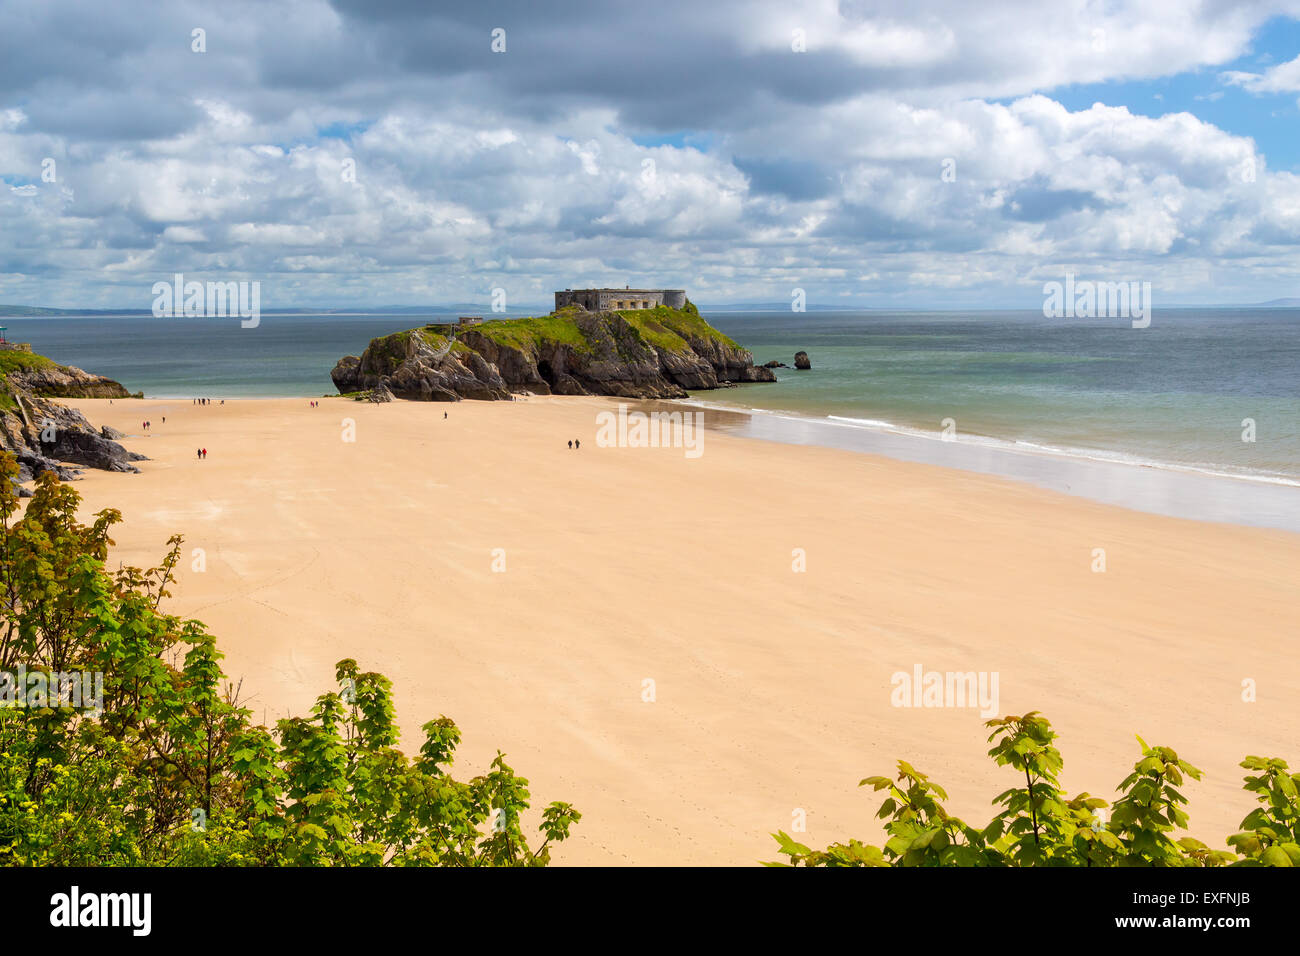 Surplombant la plage de Tenby et St Catherines Island dans la baie de Carmarthen, Pembrokeshire, Pays de Galles du sud-ouest de l'Europe, Royaume-Uni Banque D'Images